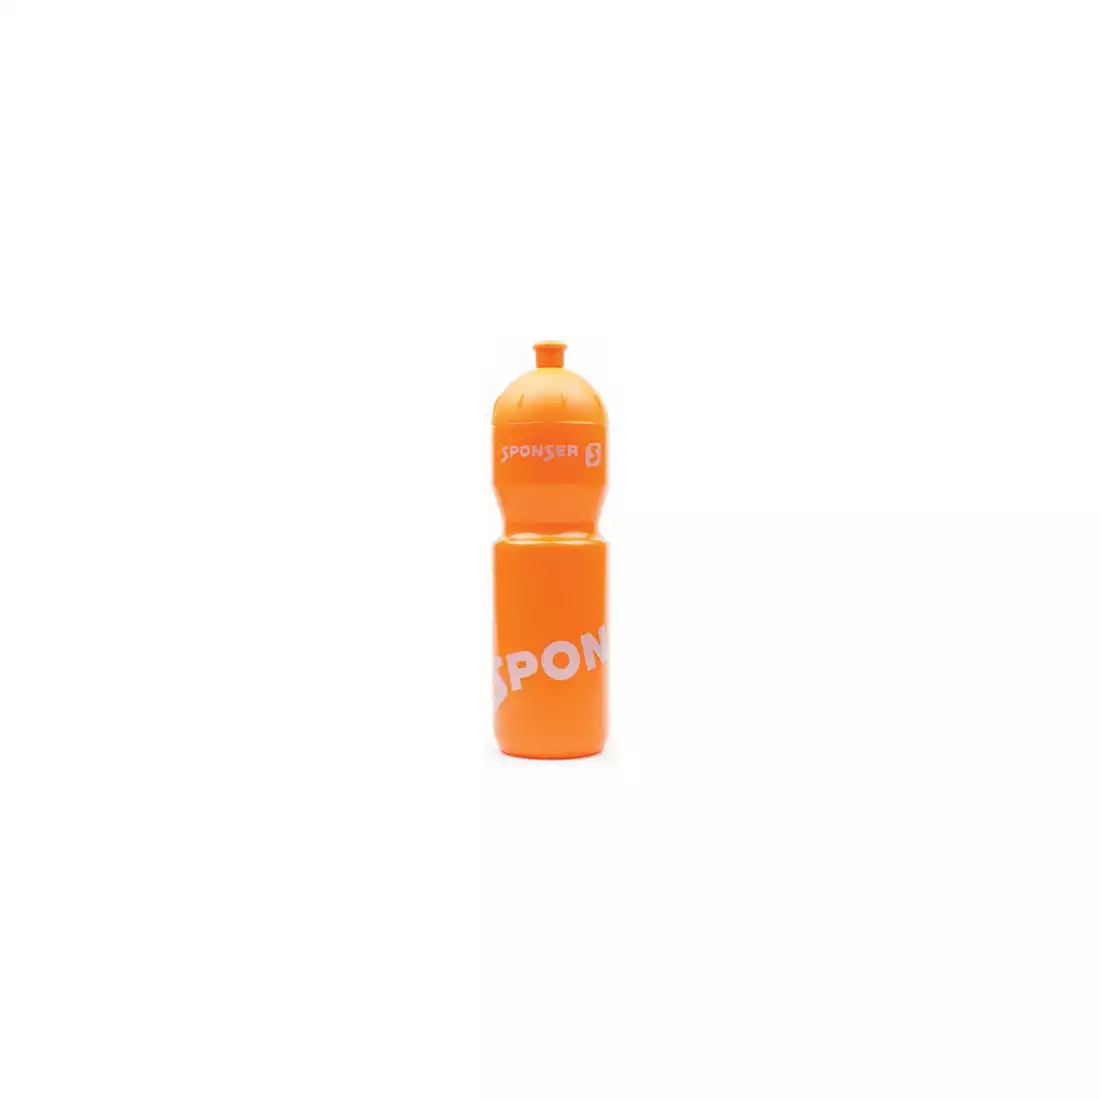 SPONSER NETTO cyklistická láhev na vodu 750 ml, oranžová/stříbrná